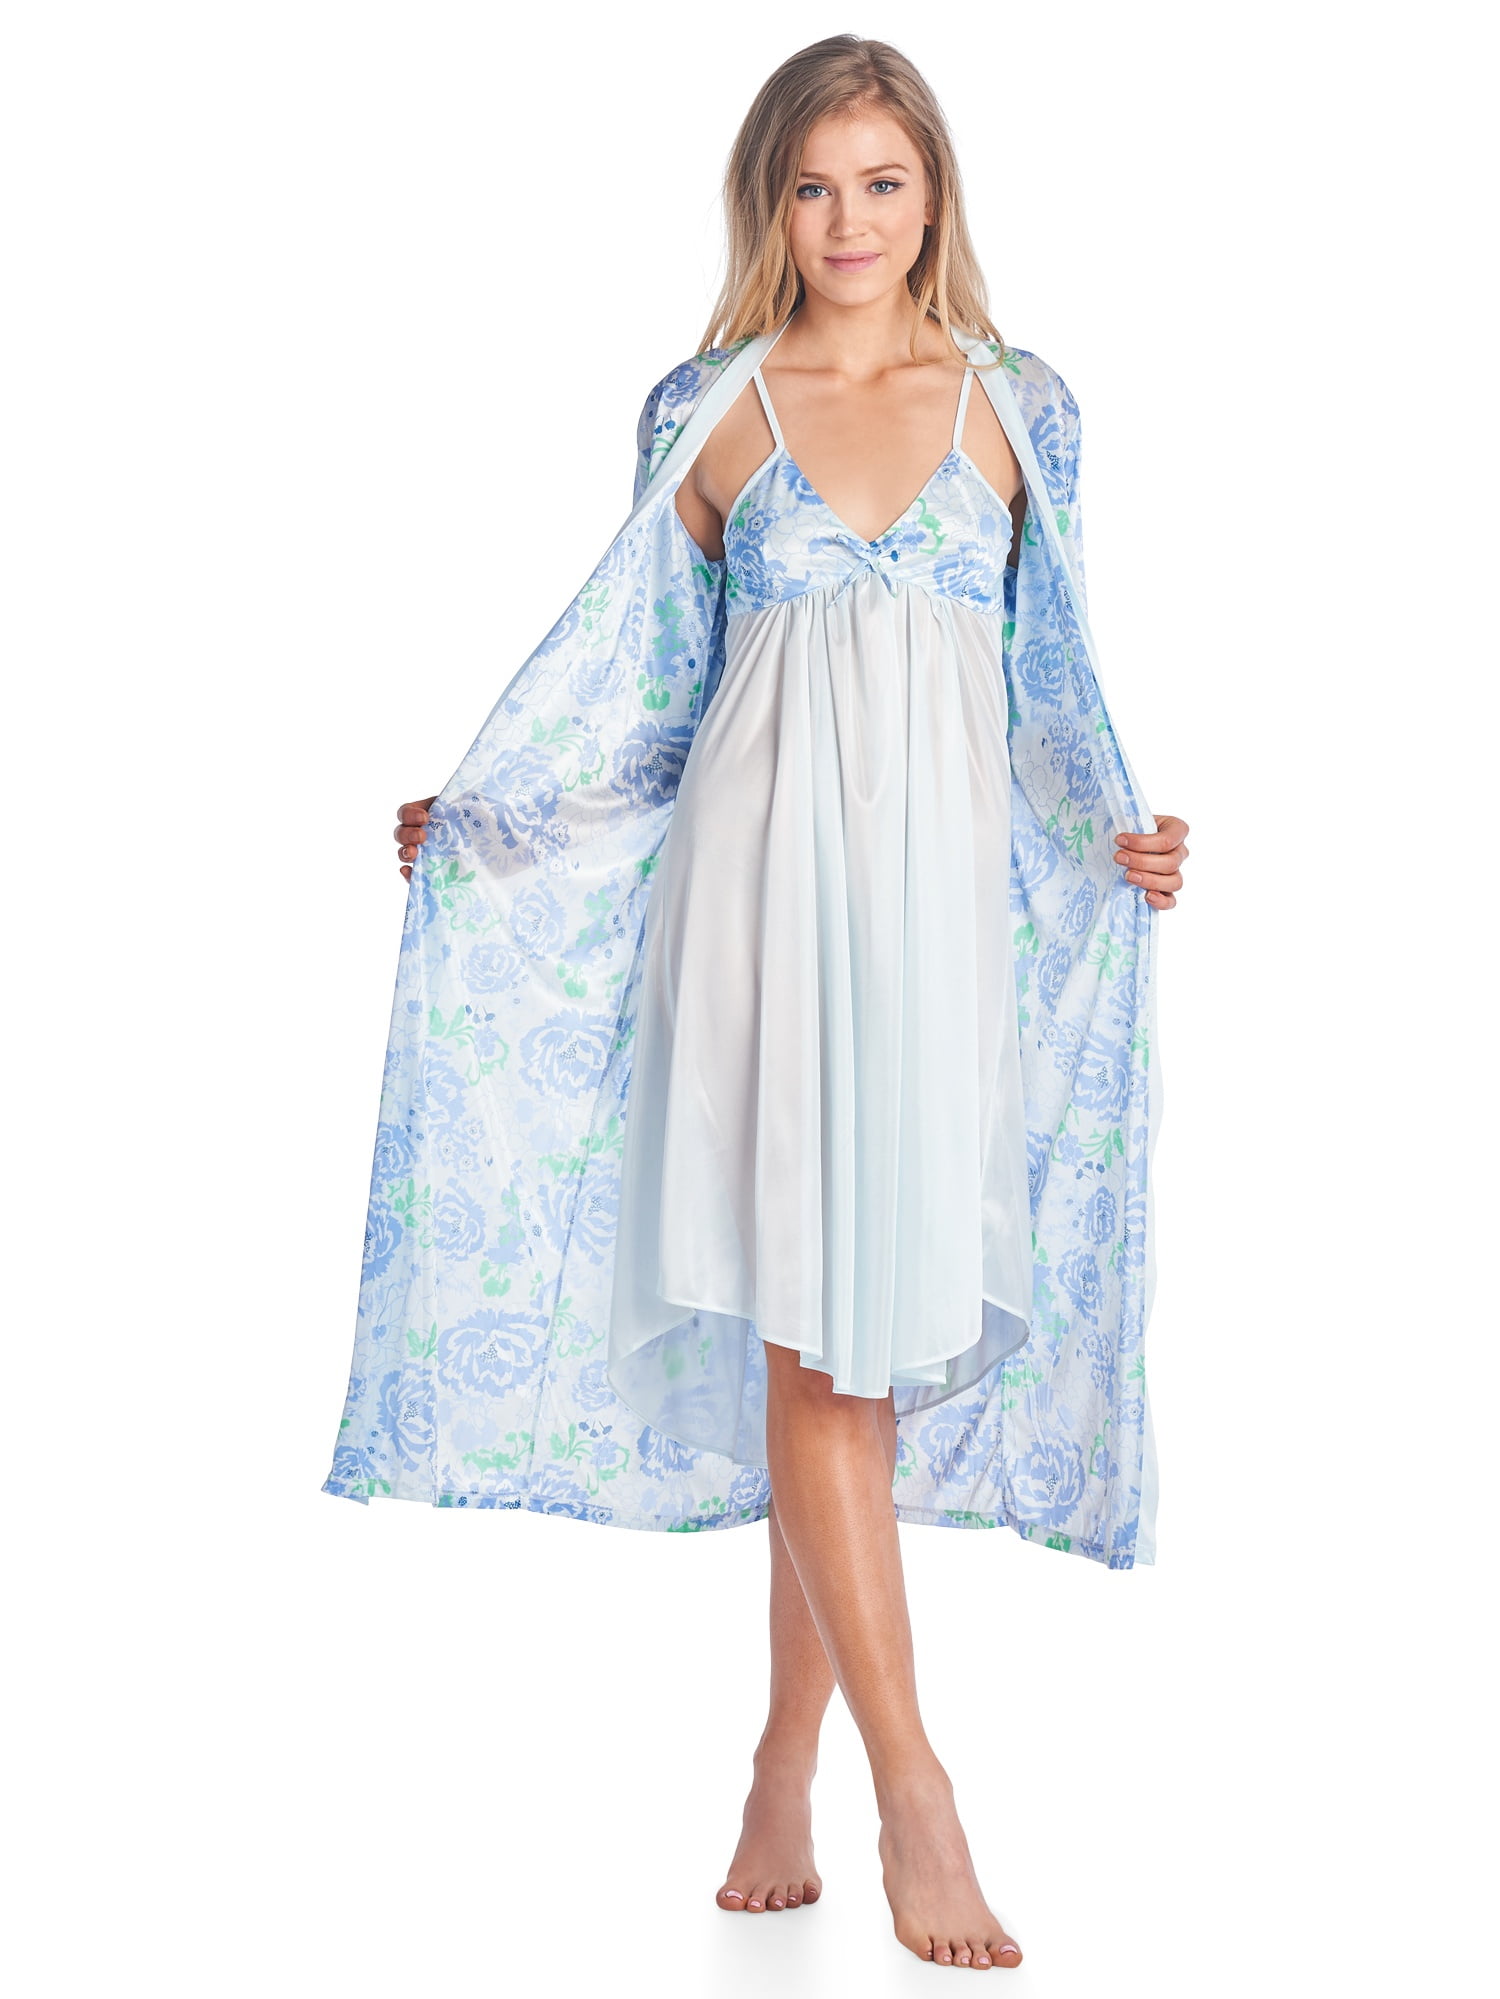 Maternity Nightie Nightdress Nightwear  in size 10 12 14 16 18 20 